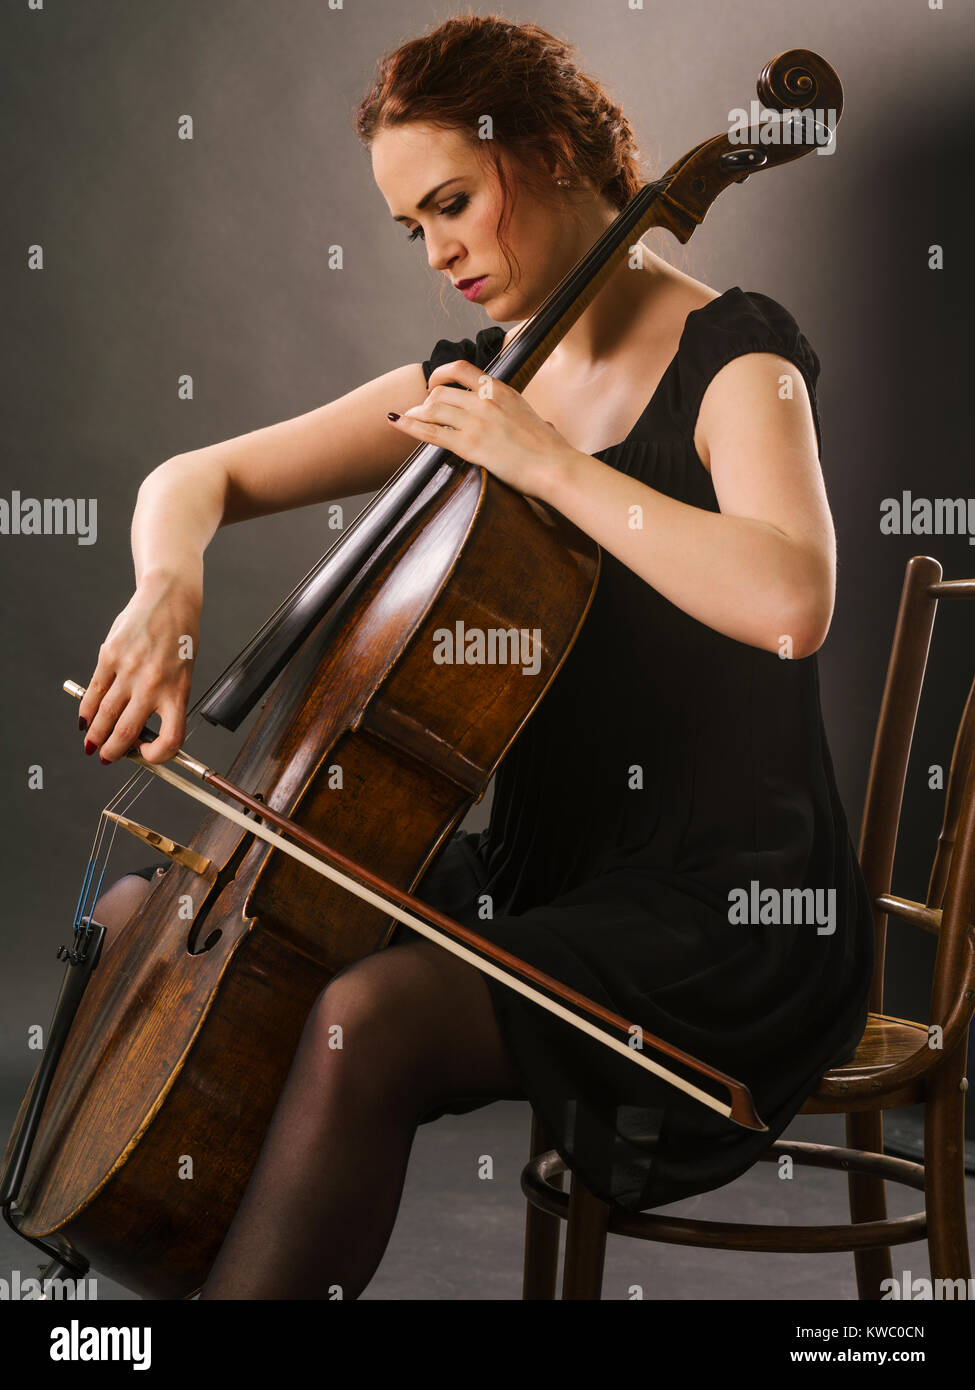 Foto von einem schönen weiblichen Musiker spielt ein Cello. Stockfoto